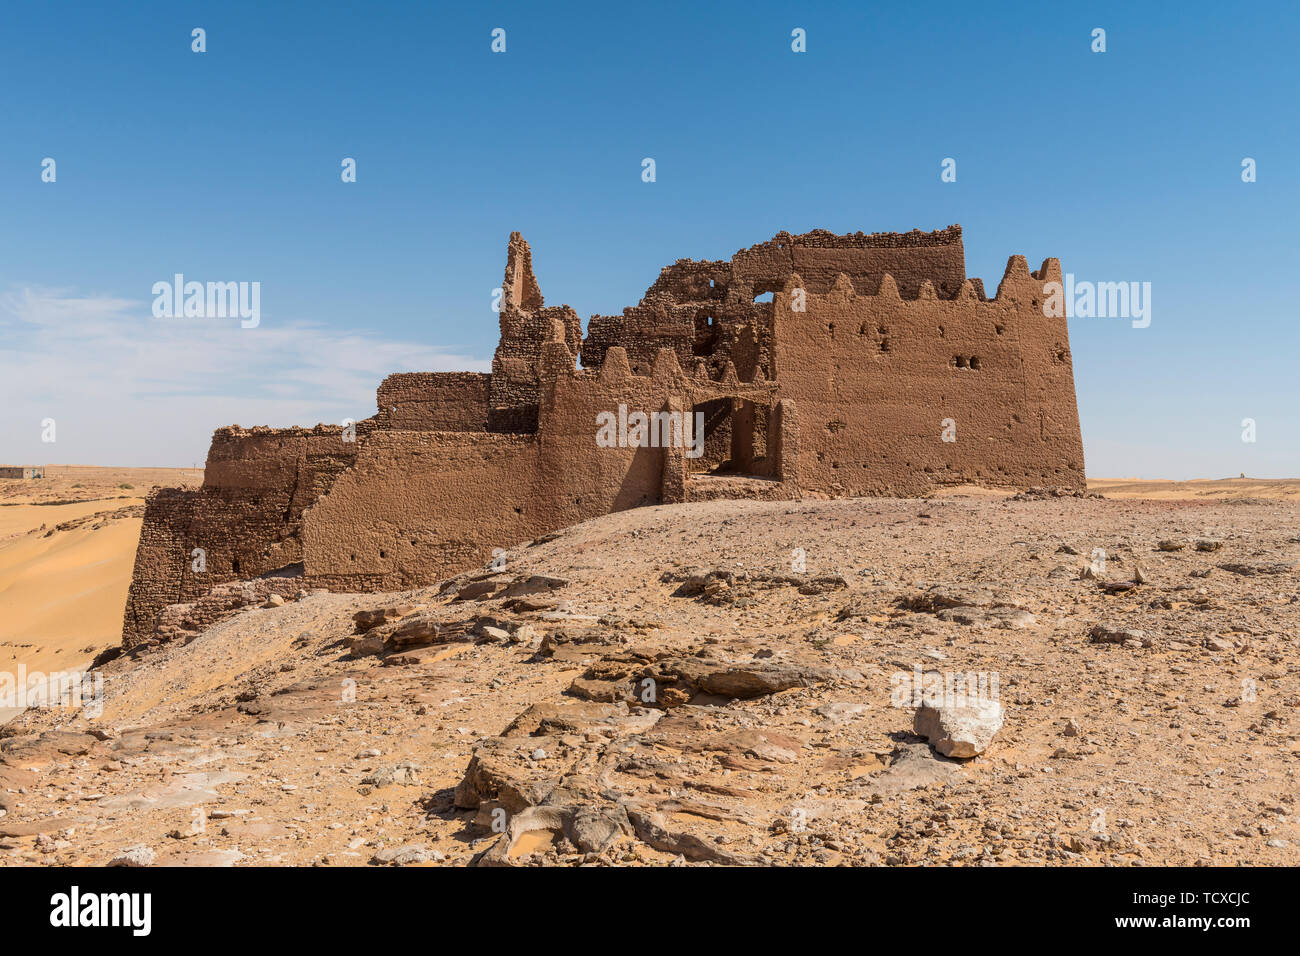 Vieux ksar, vieille ville dans le désert, près de Timimoun, dans l'ouest de l'Algérie, l'Afrique du Nord, Afrique Banque D'Images